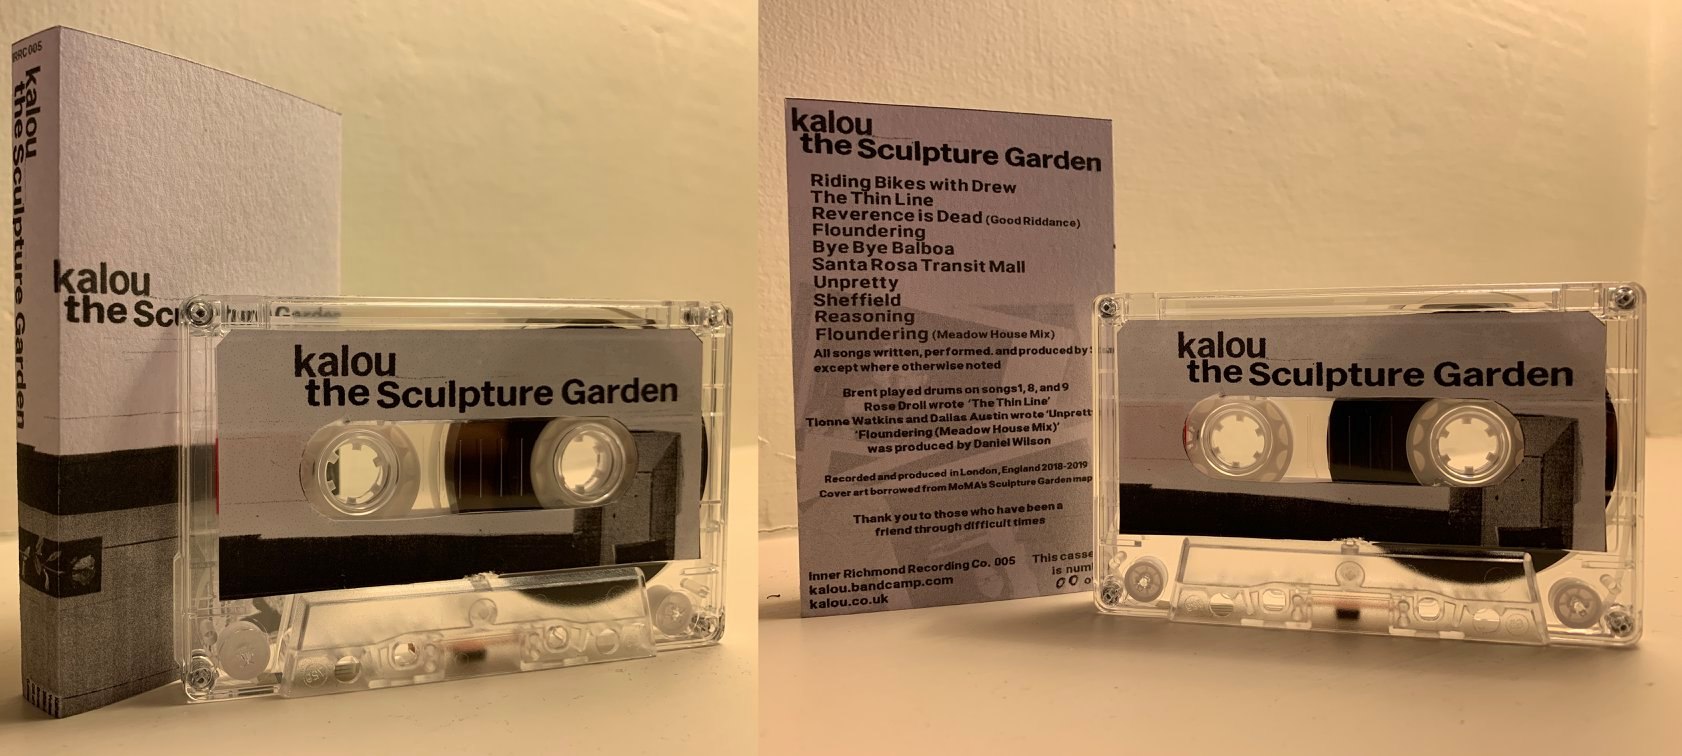 the sculpture garden cassettes